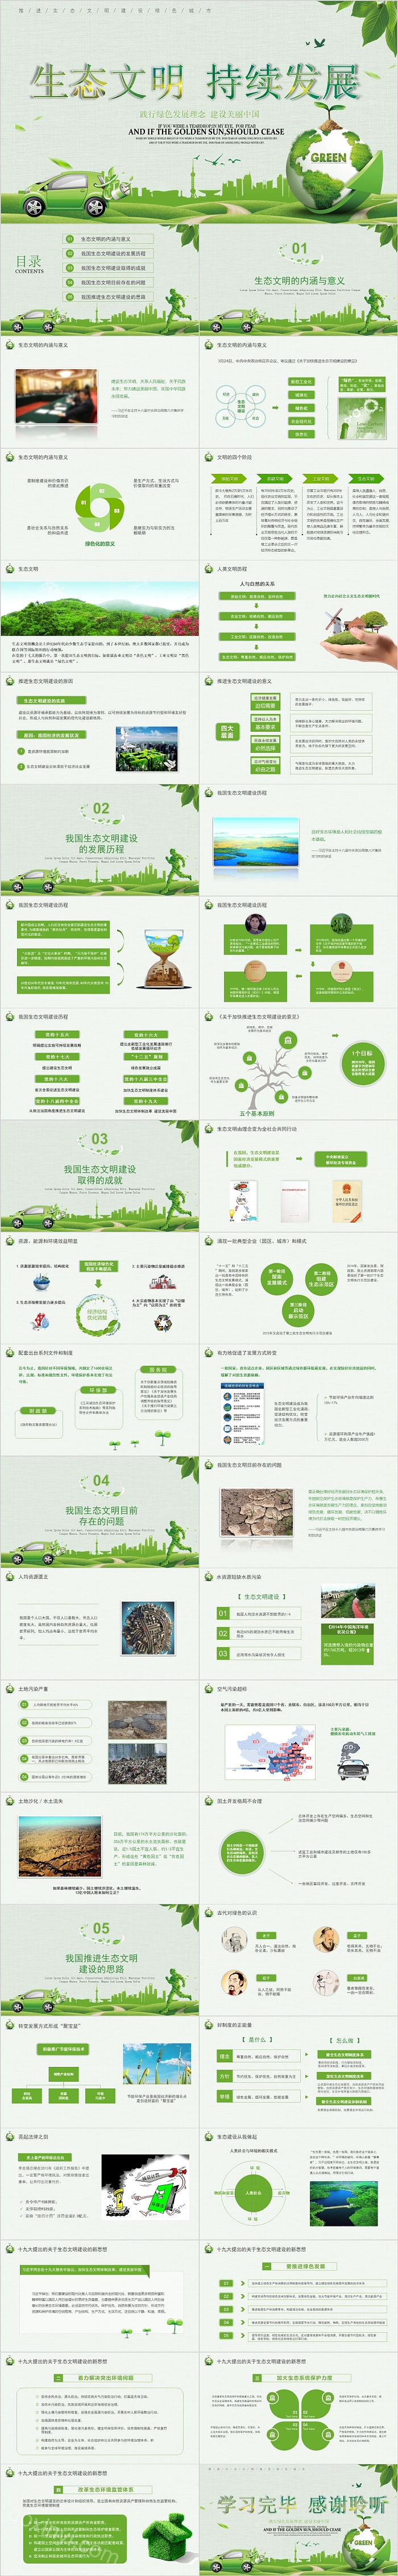 生态文明持续发展践行绿色发展理念 建设美丽中国